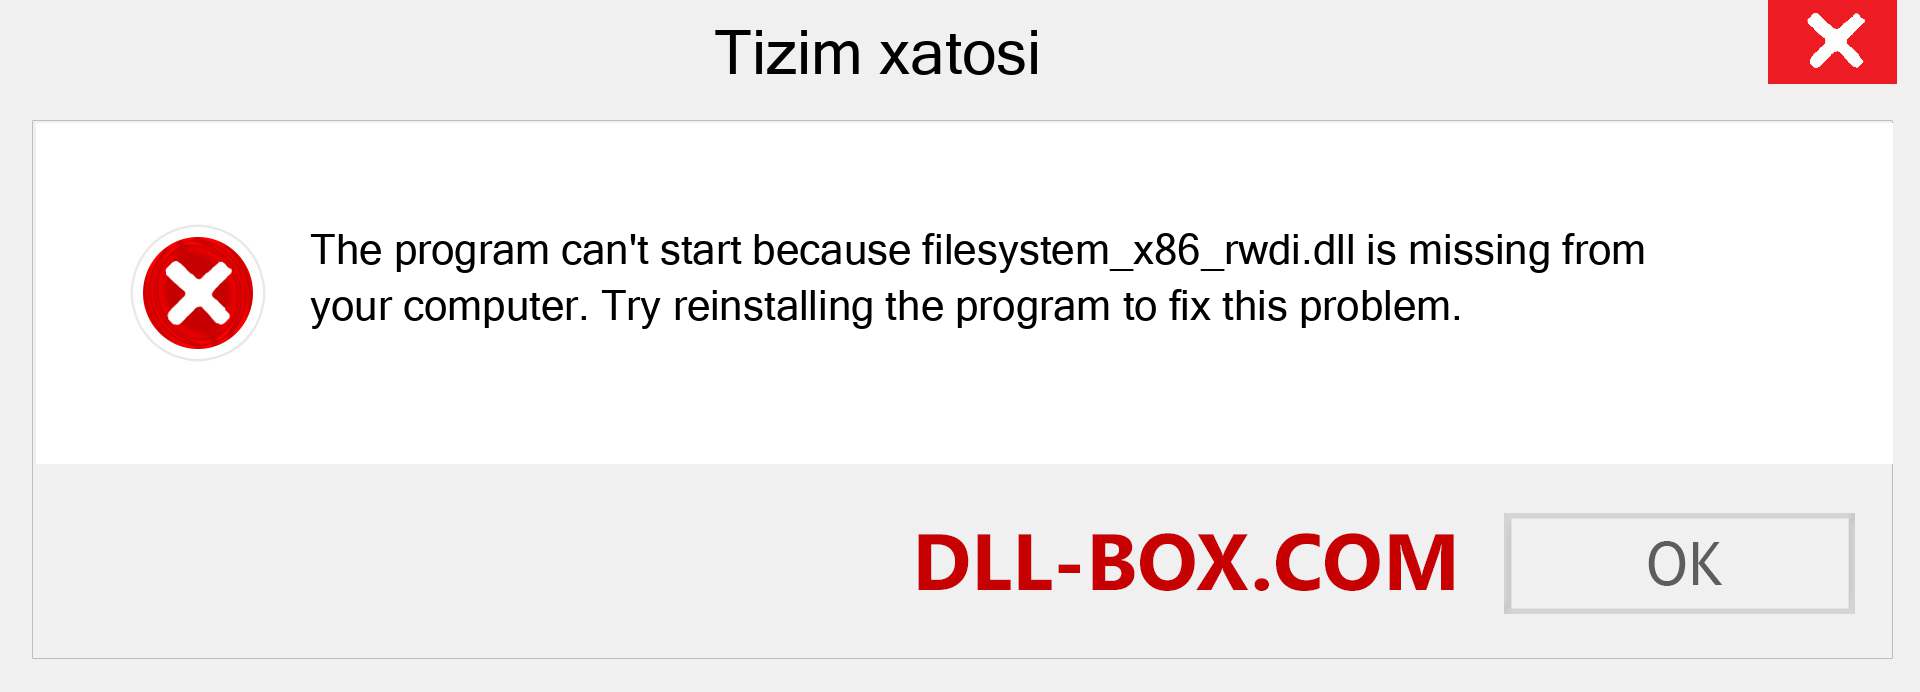 filesystem_x86_rwdi.dll fayli yo'qolganmi?. Windows 7, 8, 10 uchun yuklab olish - Windowsda filesystem_x86_rwdi dll etishmayotgan xatoni tuzating, rasmlar, rasmlar